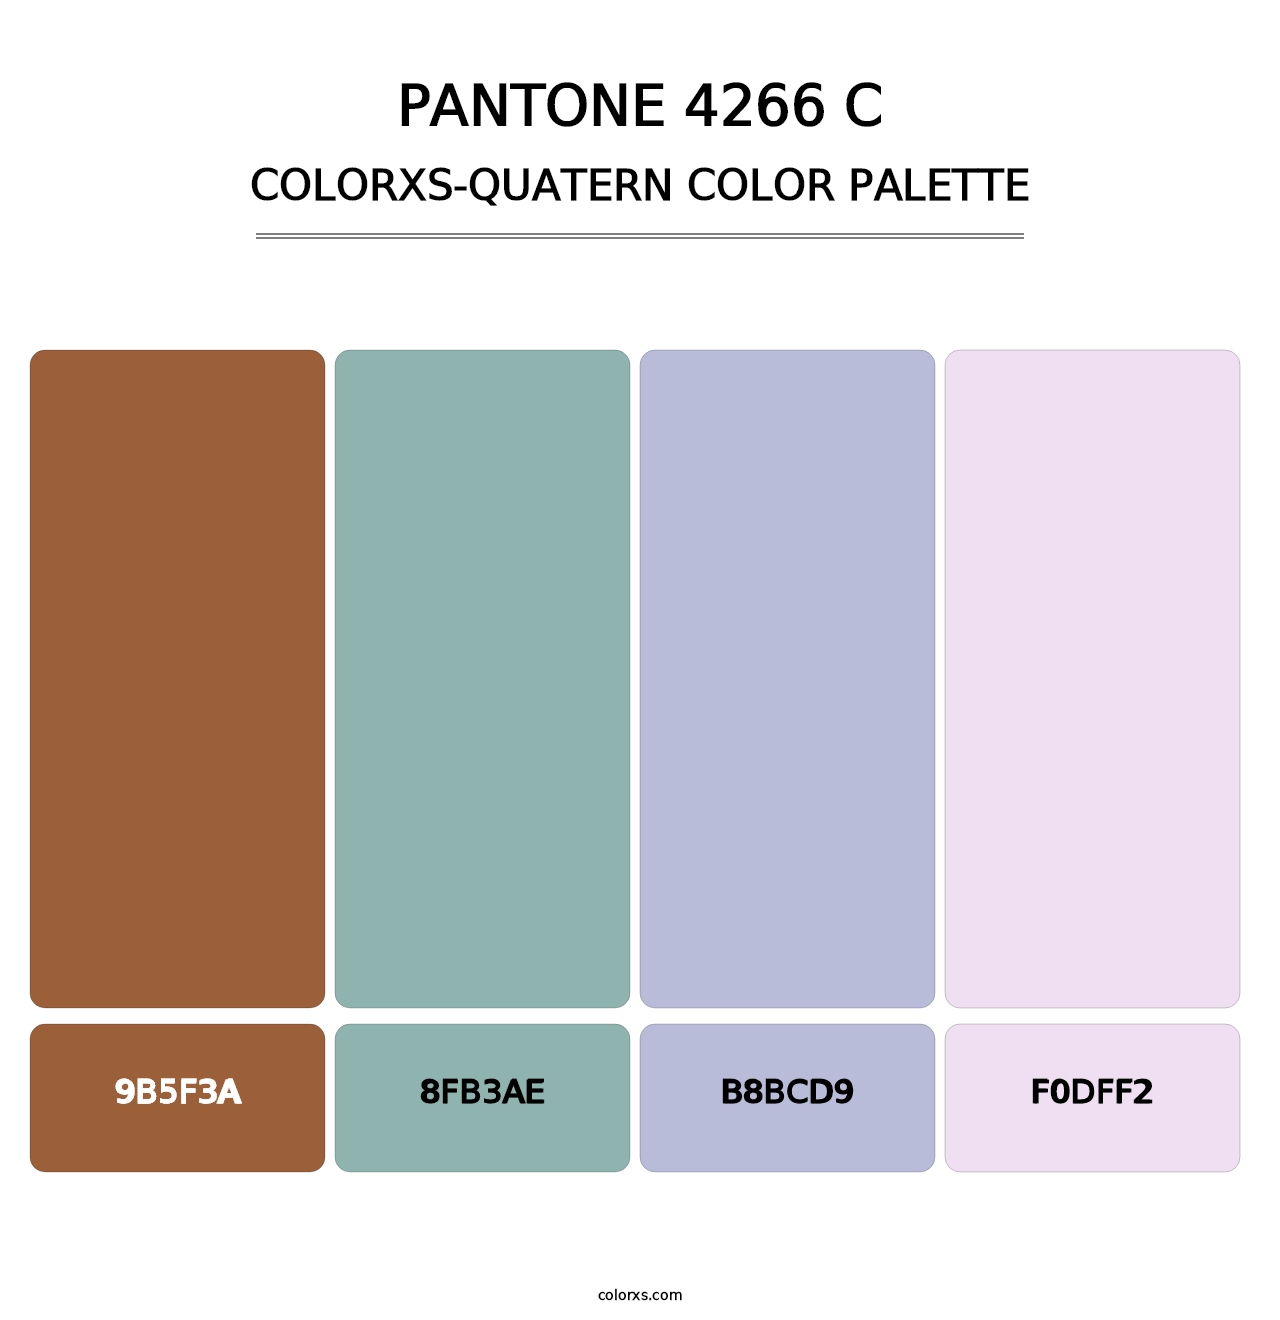 PANTONE 4266 C - Colorxs Quatern Palette